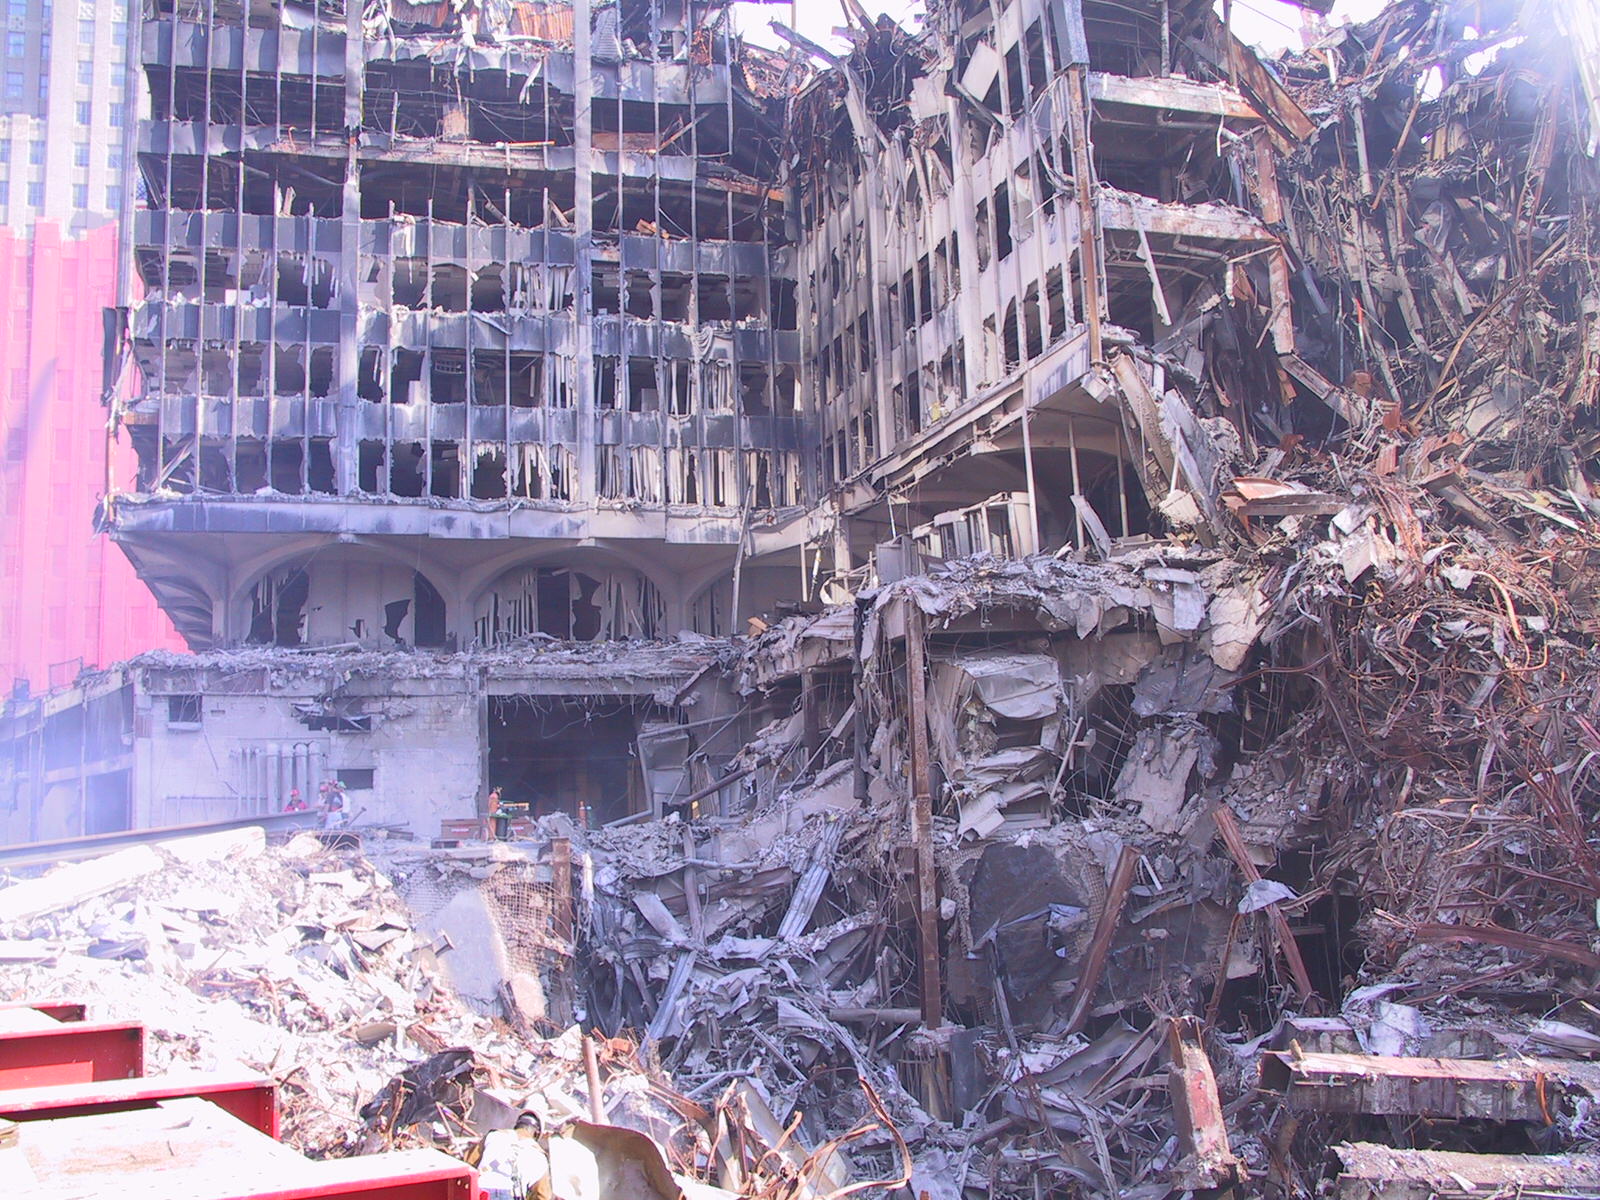 Фото после теракта. Теракт 11 сентября в Нью Йорке. Взрыв башен-близнецов в Нью-Йорке. Трагедия 11 сентября 2001 в США.